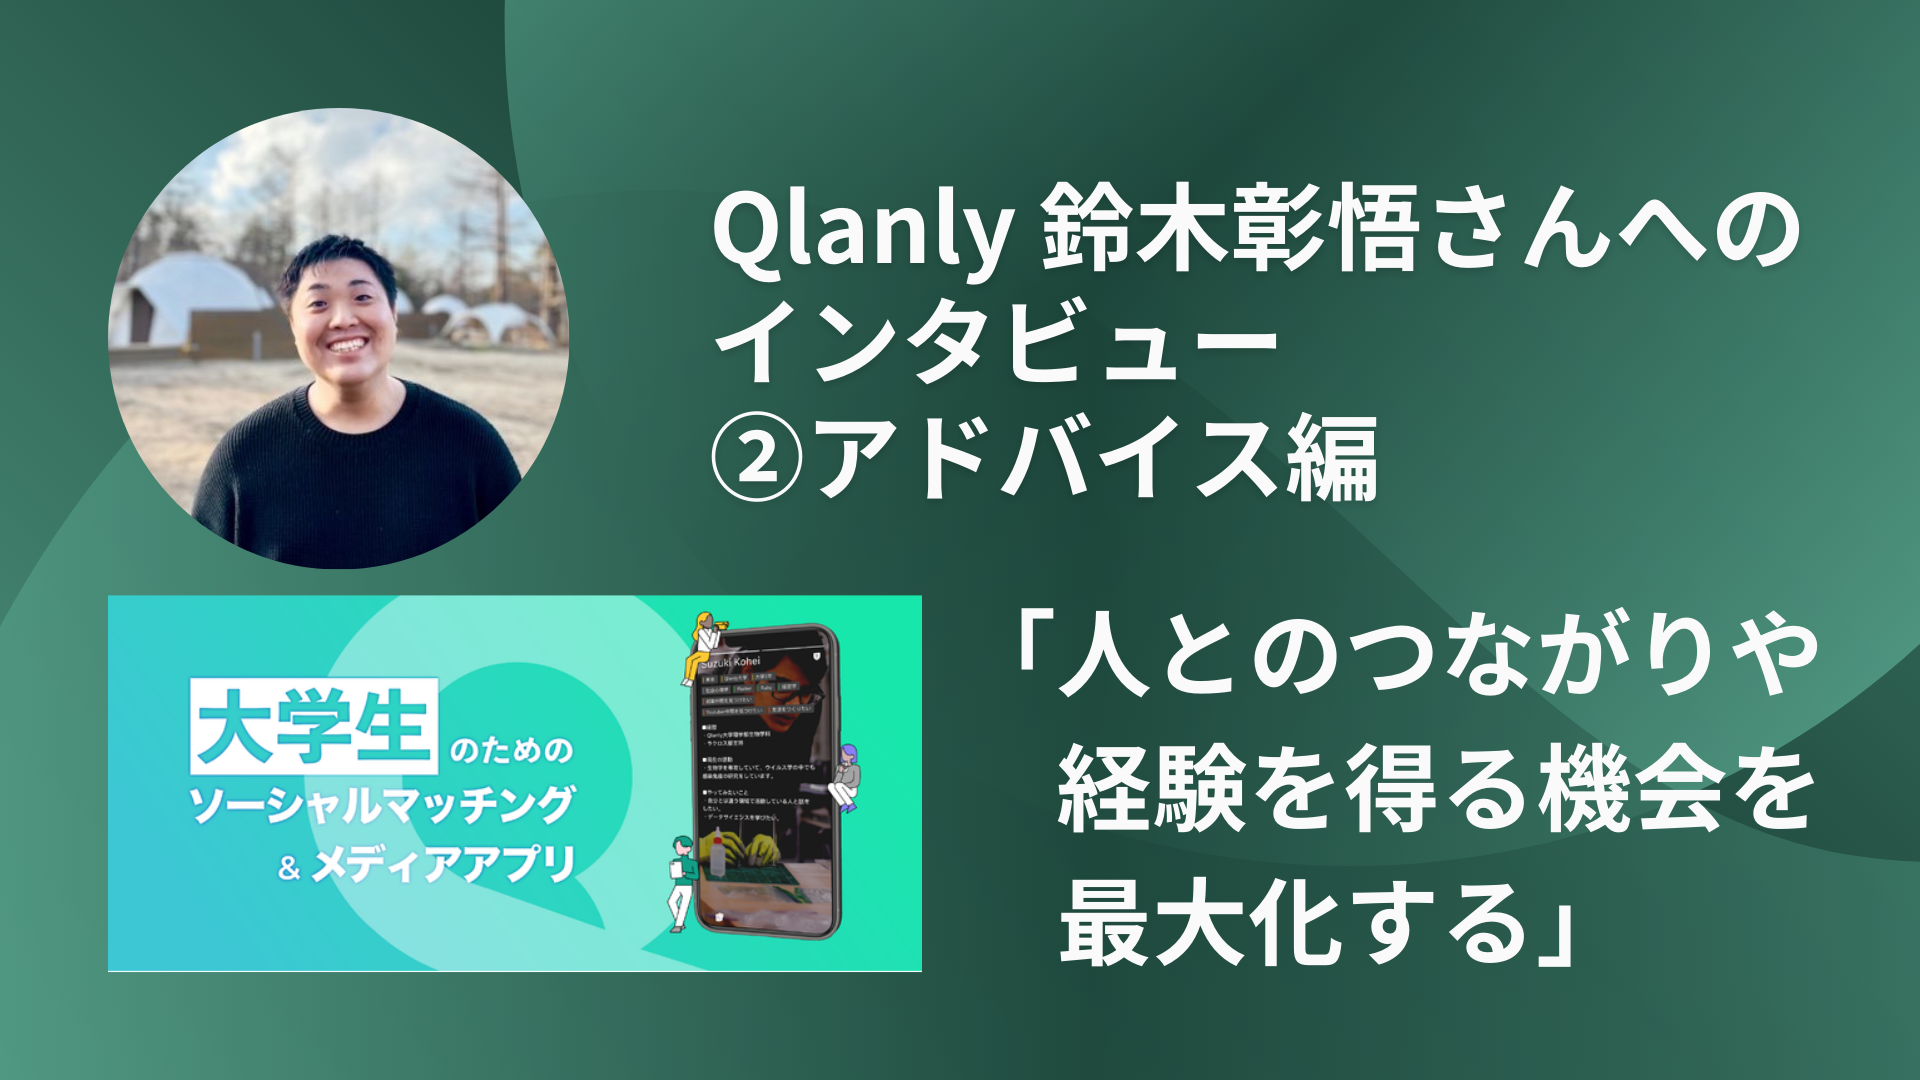 Qlanly 鈴木彰悟さんへのインタビュー②アドバイス編「人とのつながりや経験を得る機会を最大化する」